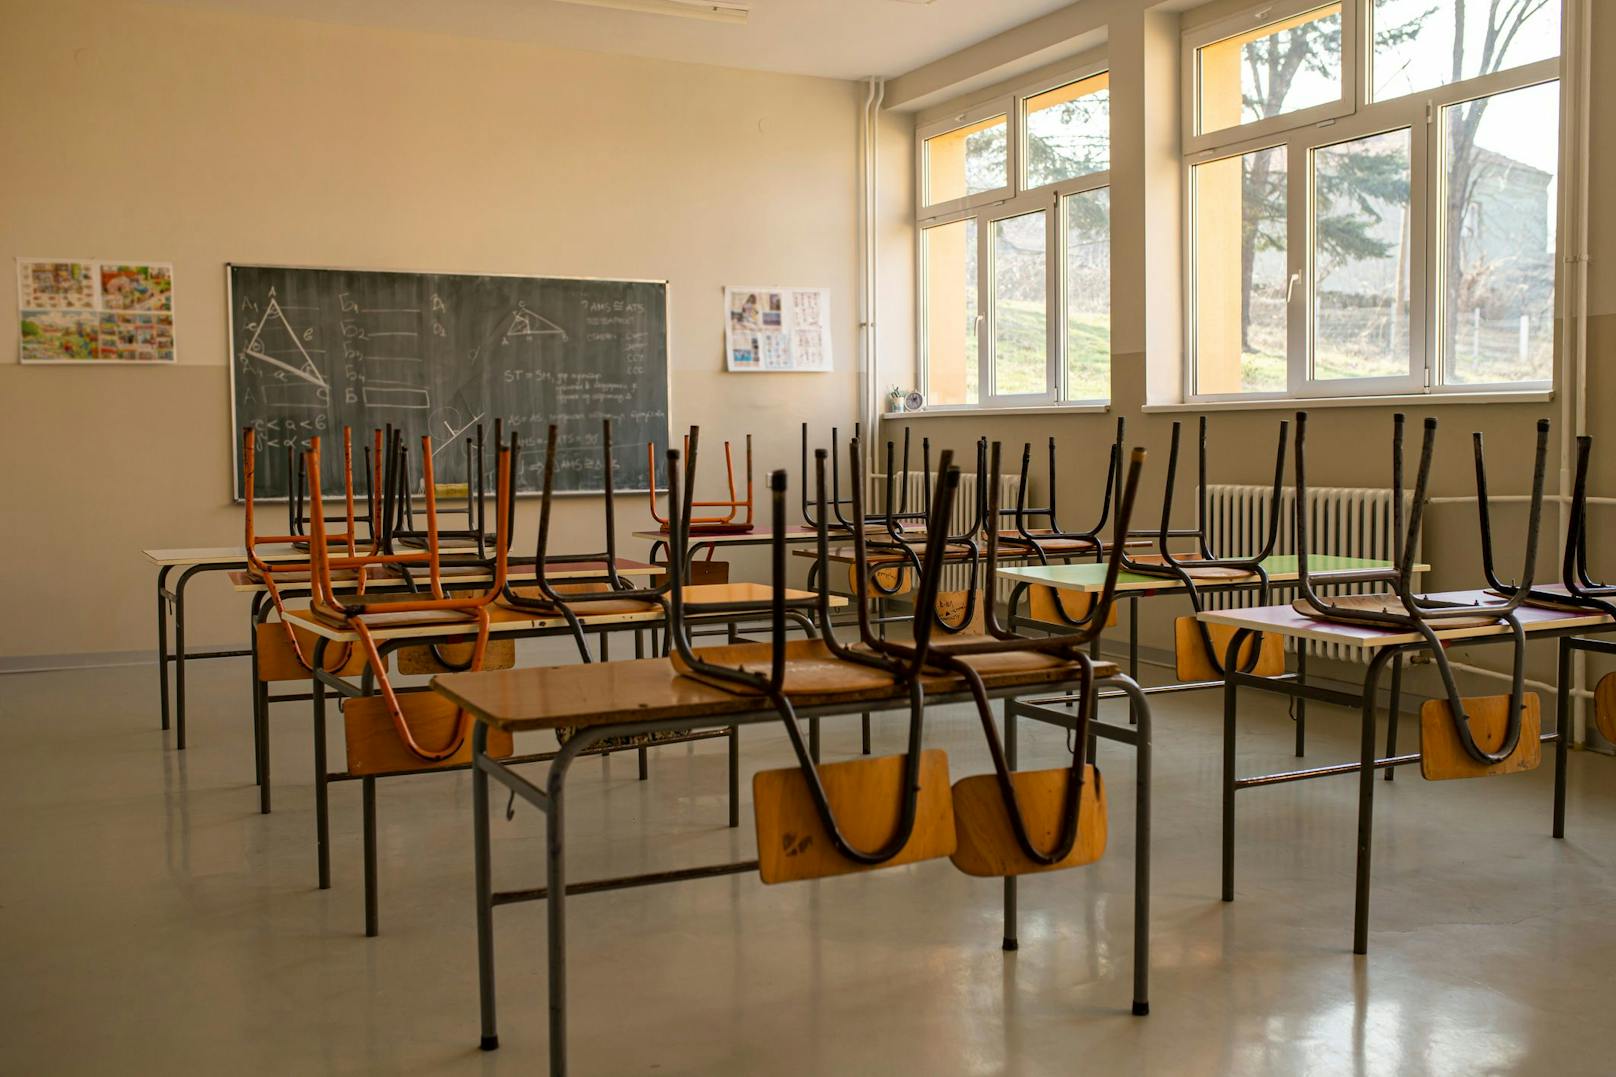 Viele Schulklasse sind derzeit leer, weil sich die Kinder wegen in Distance Learning befinden. (Symbolbild)